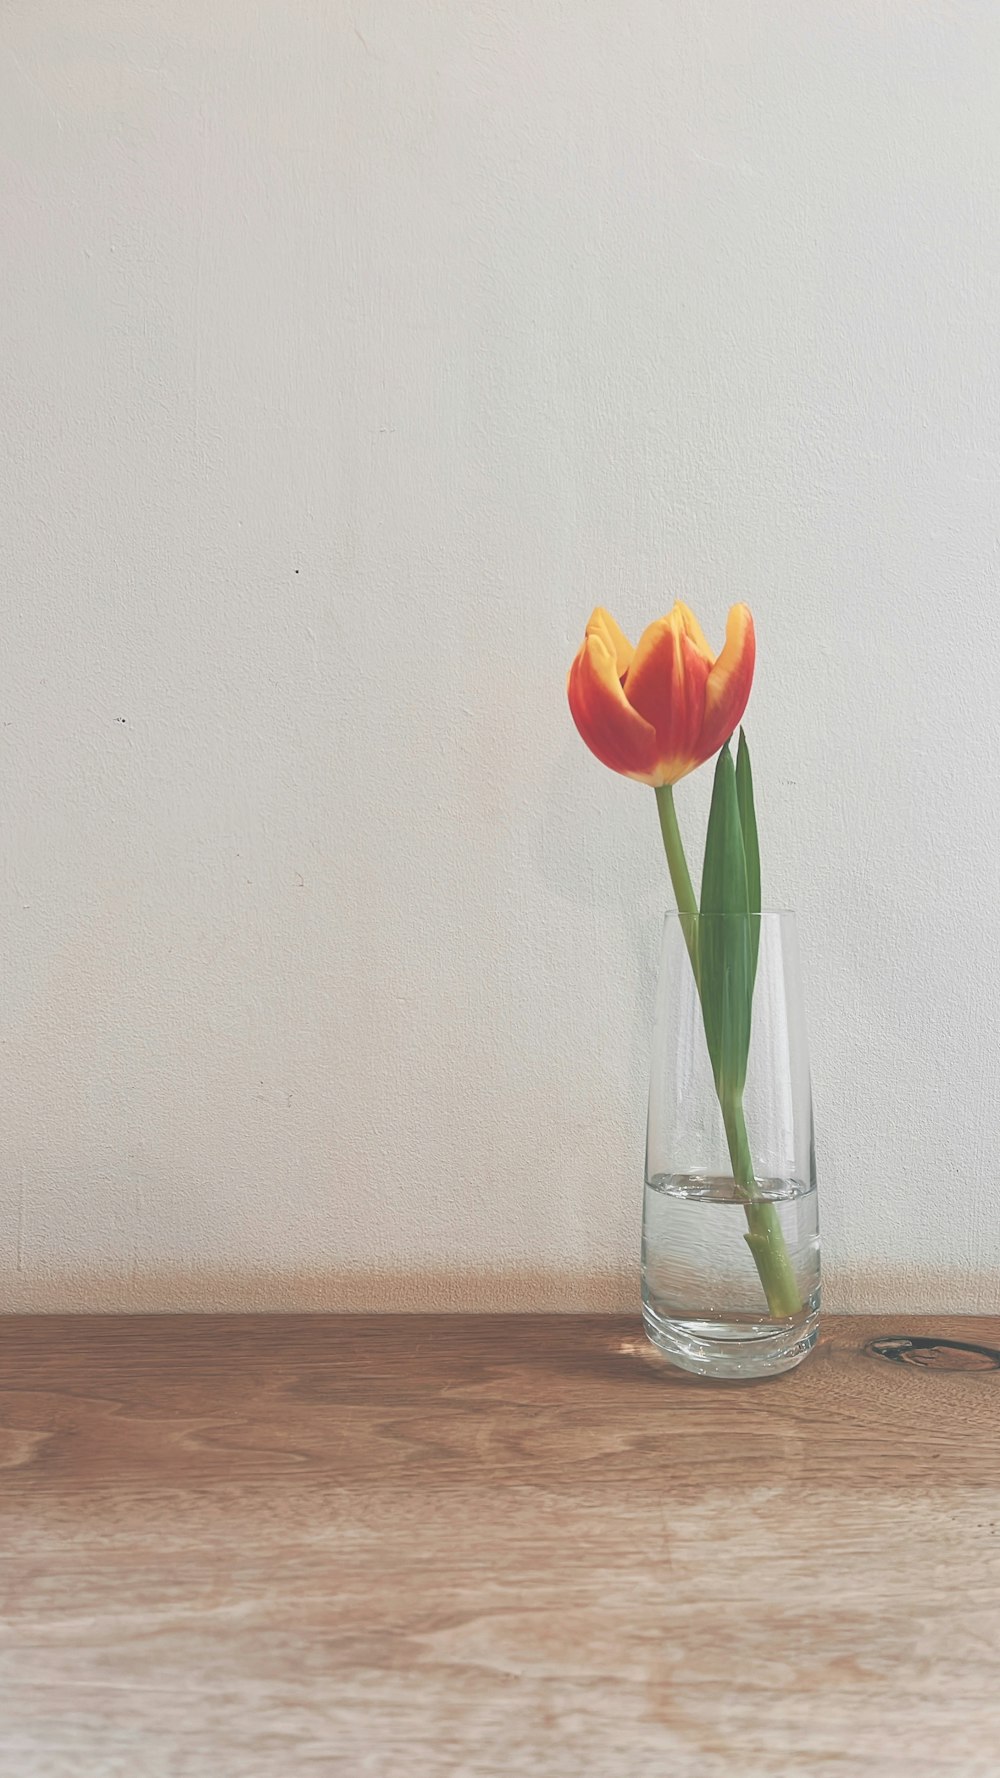 テーブルの上のガラスの花瓶に生けられた一本のチューリップ